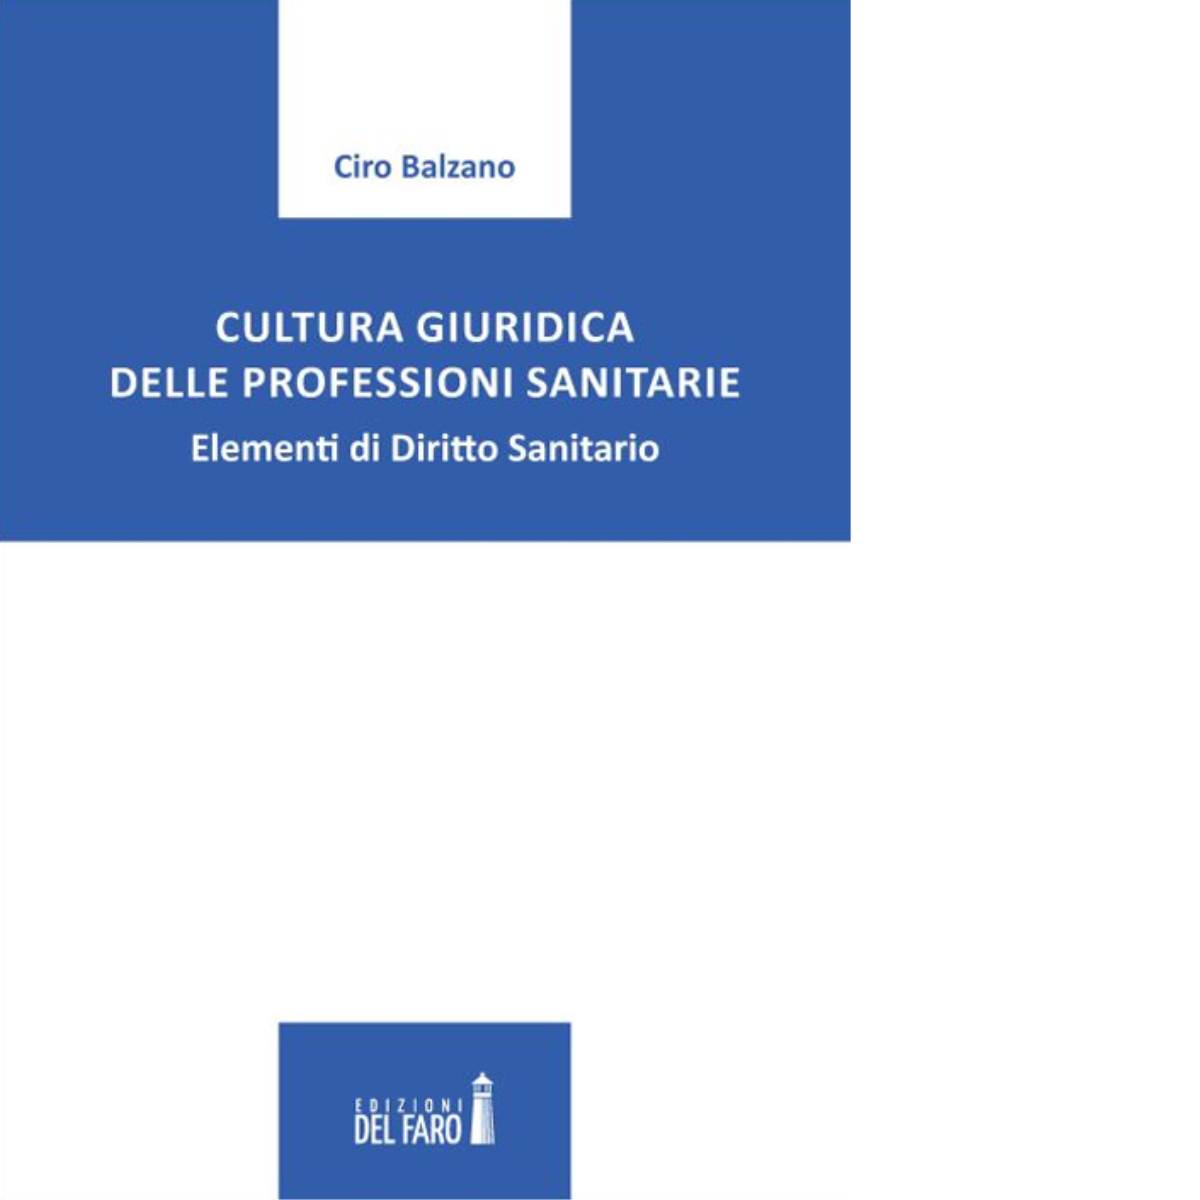 Cultura giuridica delle professioni sanitarie di Ciro Balzano - Del Faro, 2022